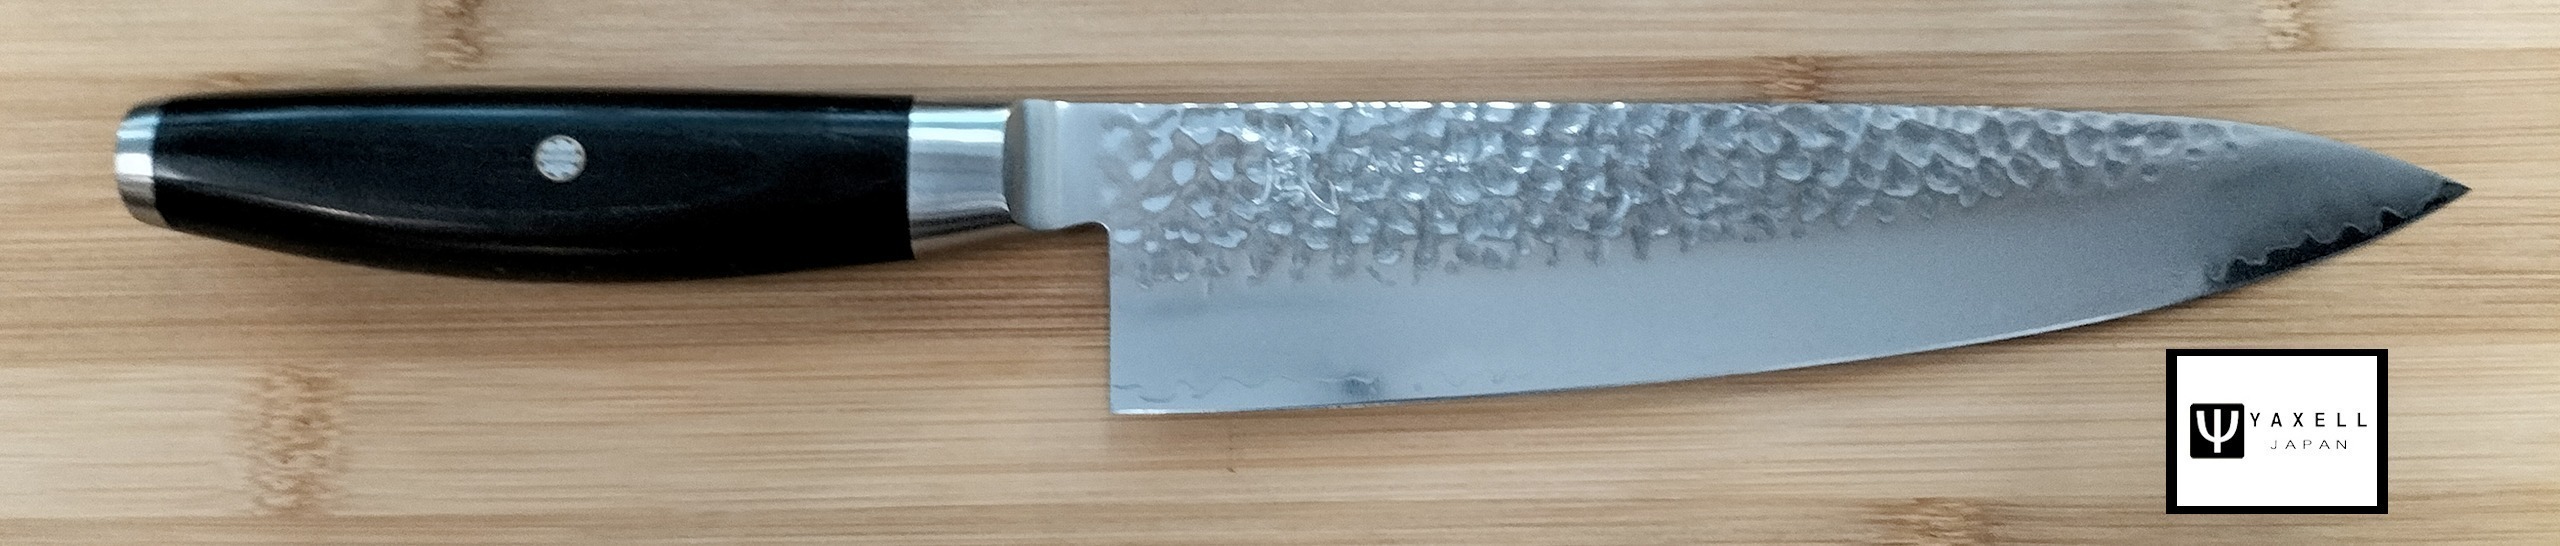 couteau japonais yaxell ketu couteau